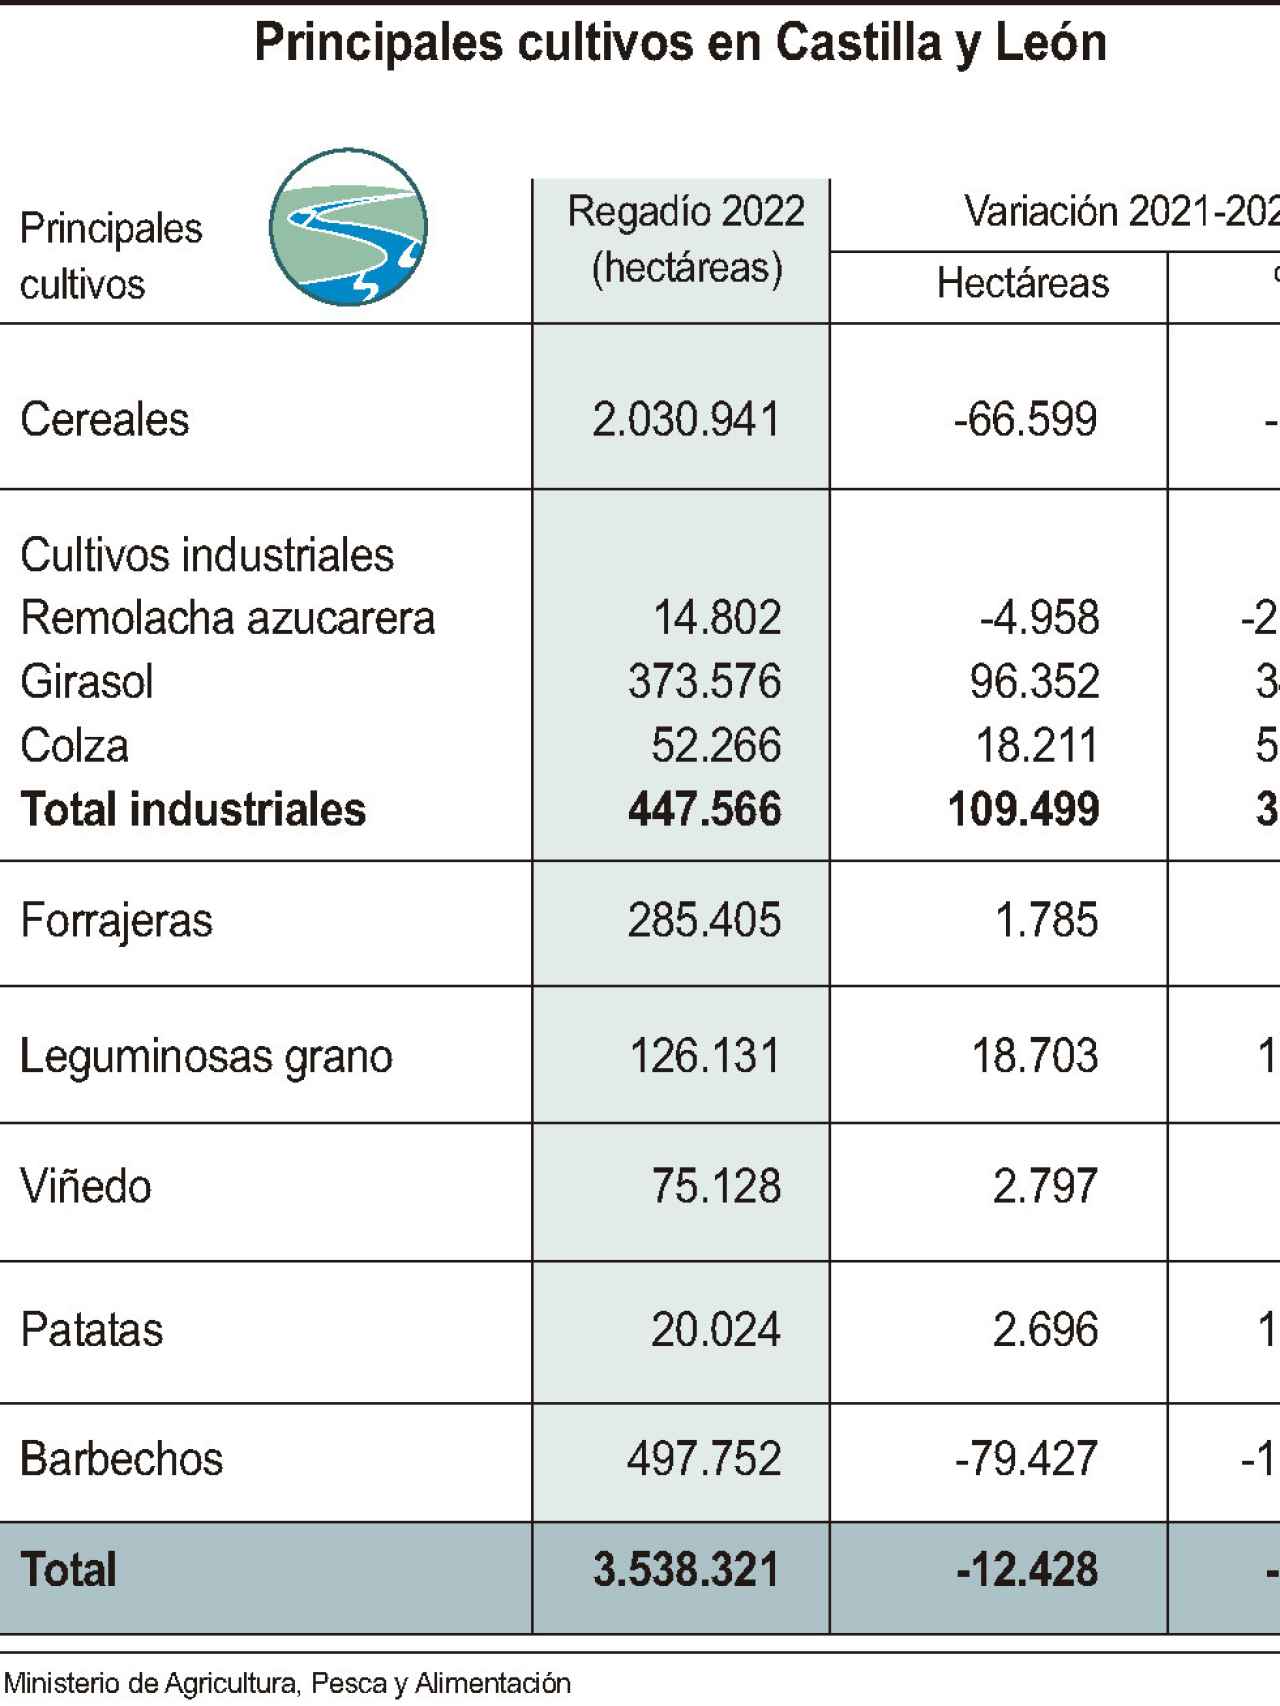 Principales cultivos en Castilla y León.